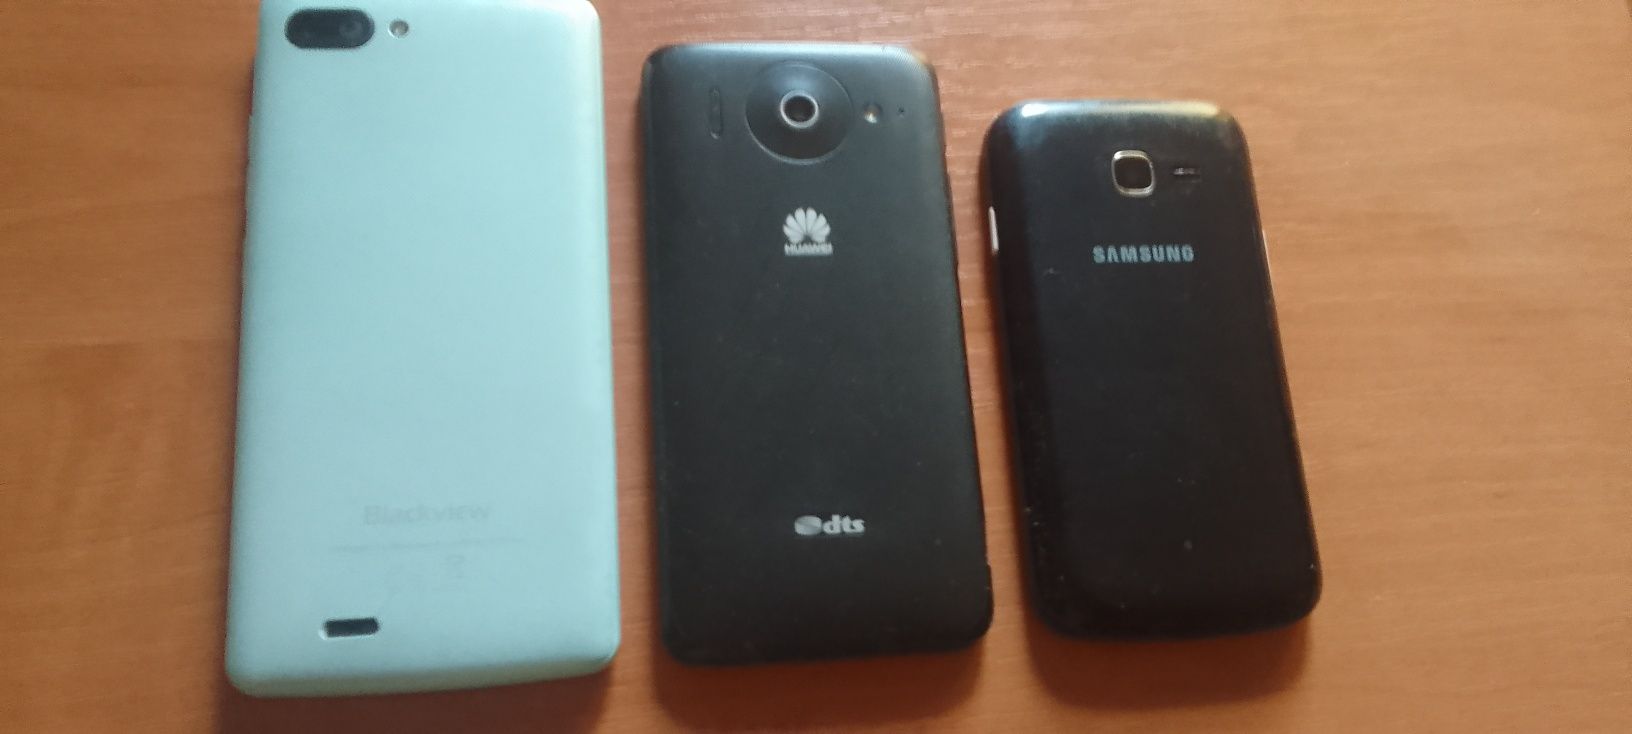 Смартфоны рабочие. Blackview A20, Huawej G510, Samsung S7262.